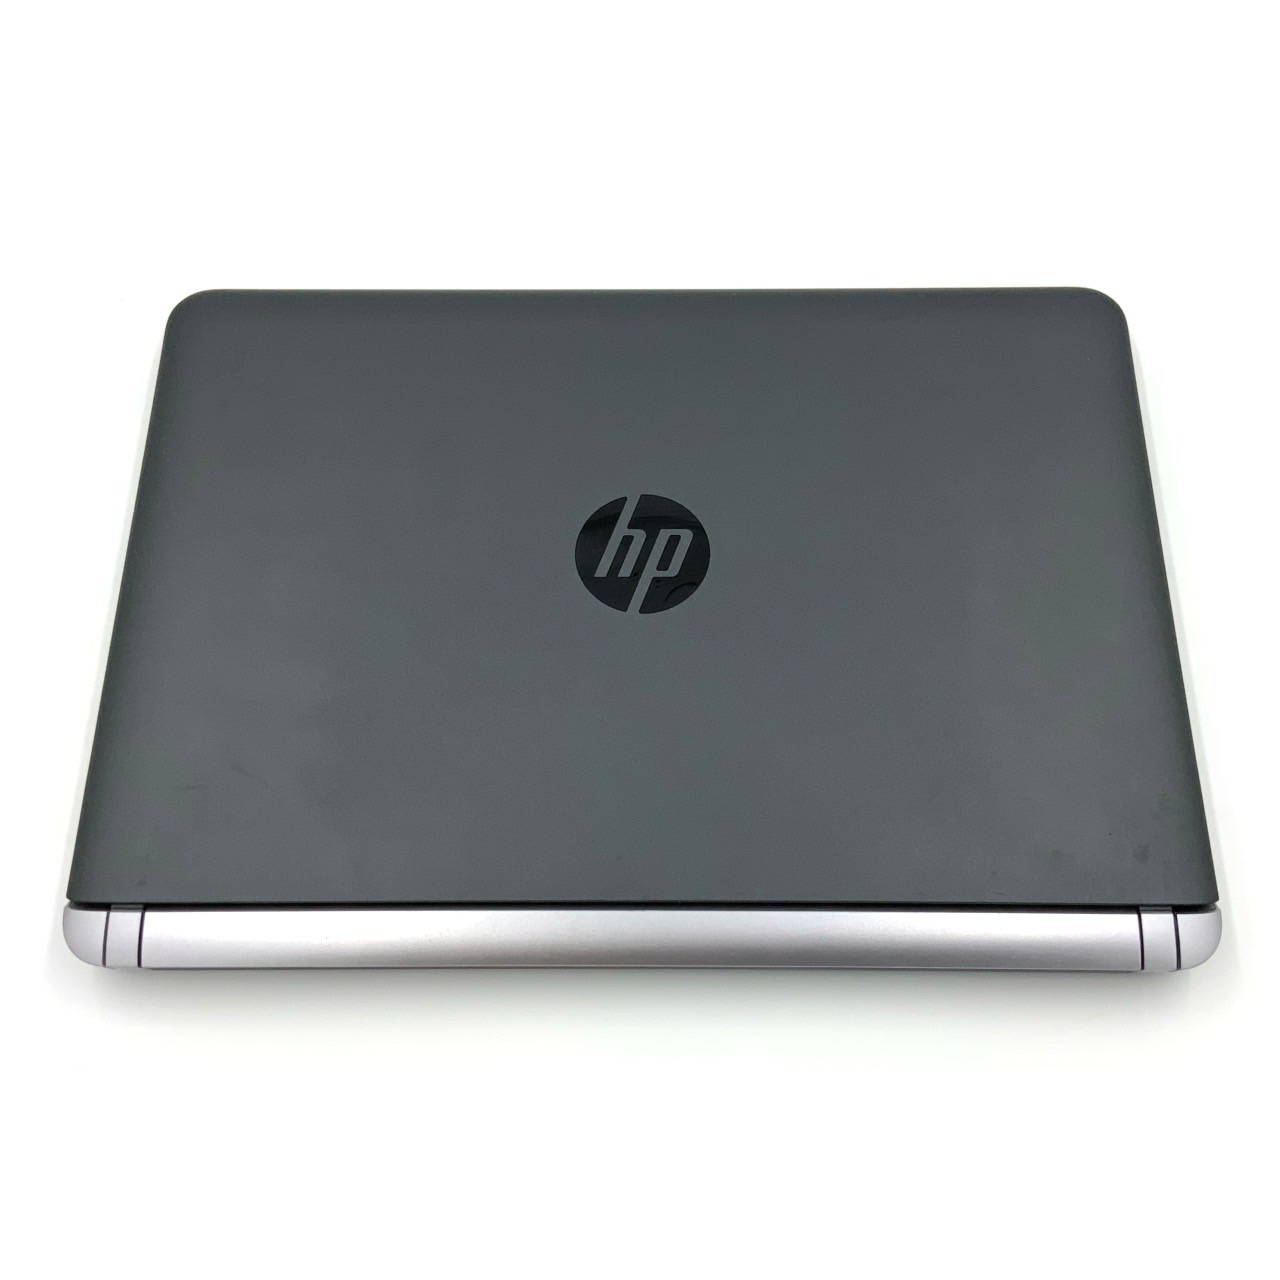 【楽天市場】【持ち運びに便利】【スタイリッシュノート】【小型】【軽量】 HP ProBook 430 G3 第6世代 Core i3